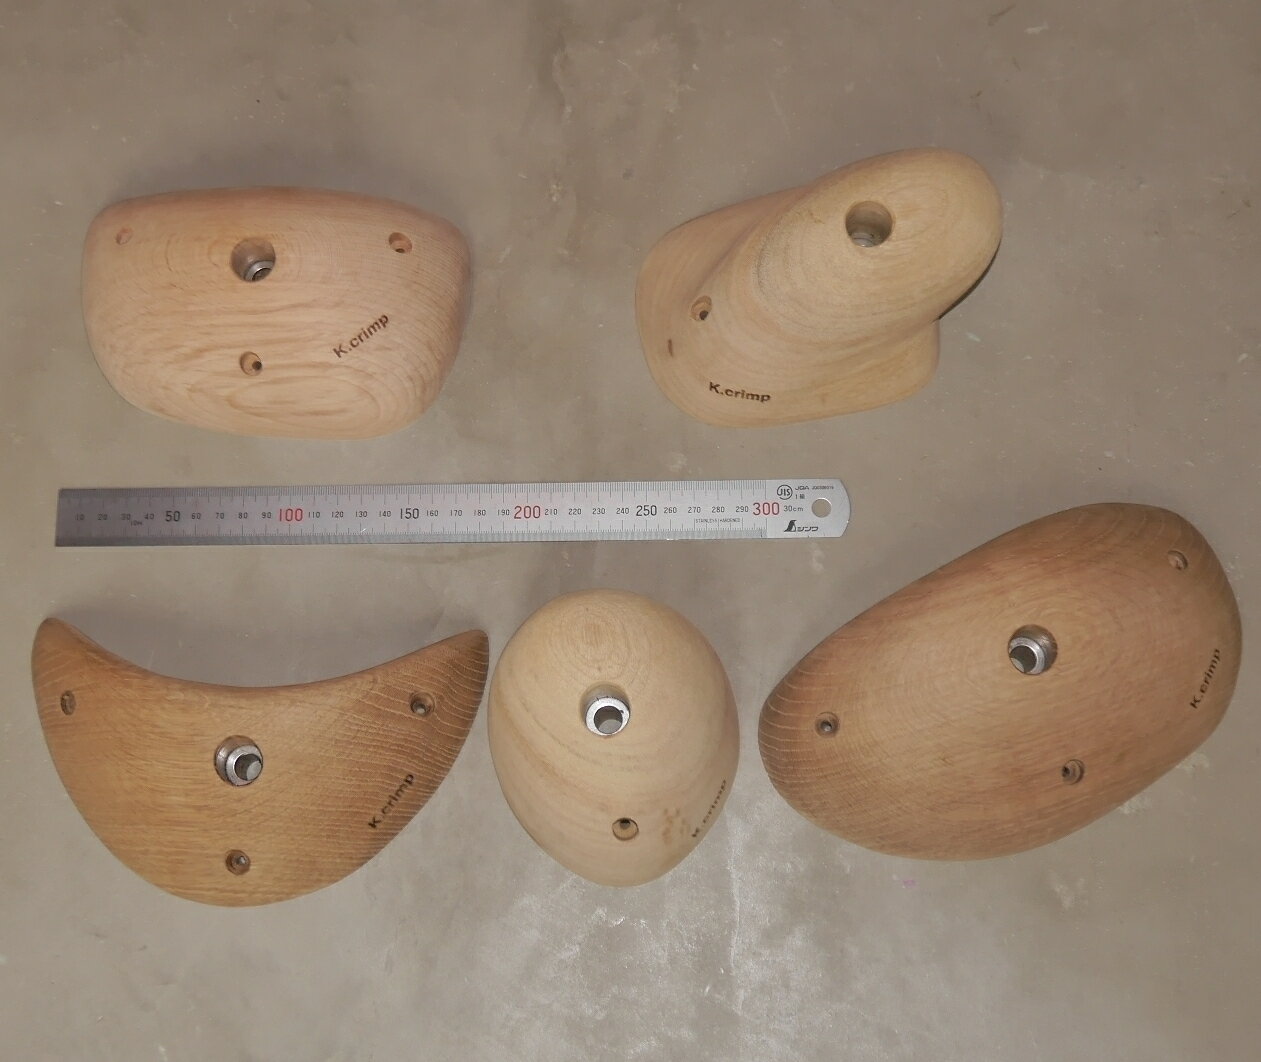 K.crimp 木製ウッドホールド(天然木材製 M10 ボルトオンホールド) 新品 Lサイズ 5個セット MADE IN JAPAN(日本製) ボ…